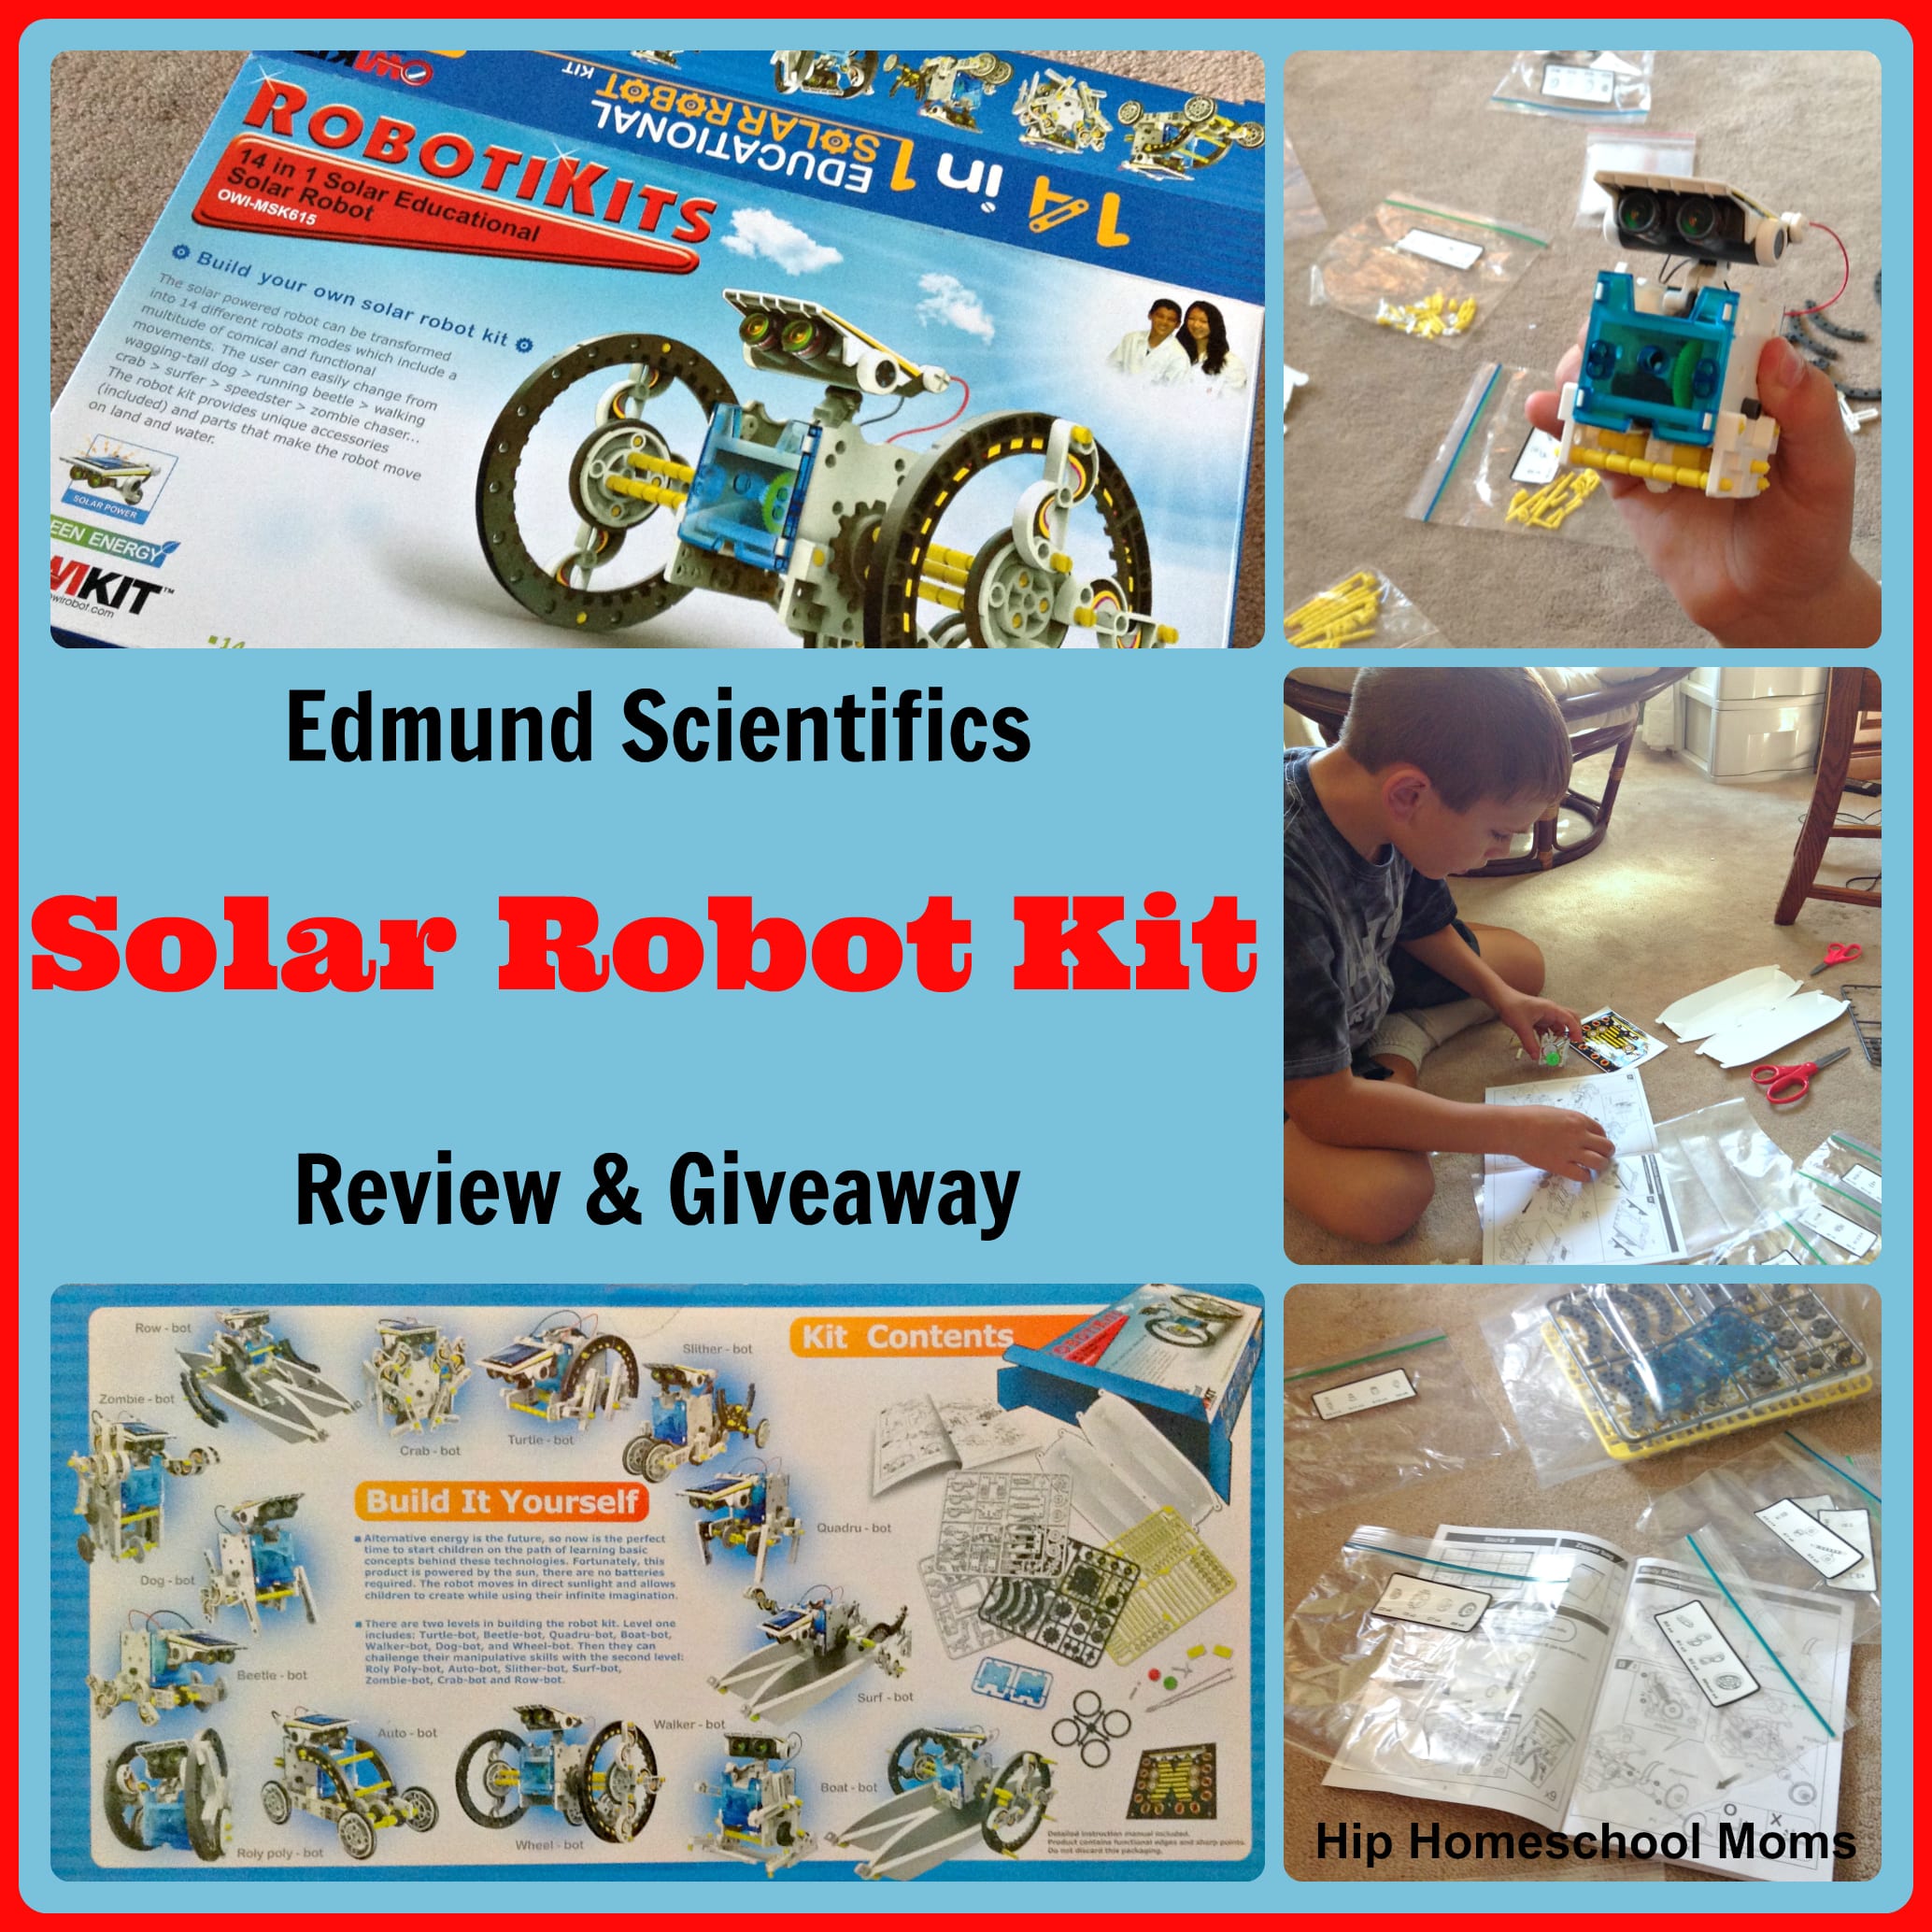 Edmund Scientifics Solar Robot Kit Review & Giveaway  {closed}